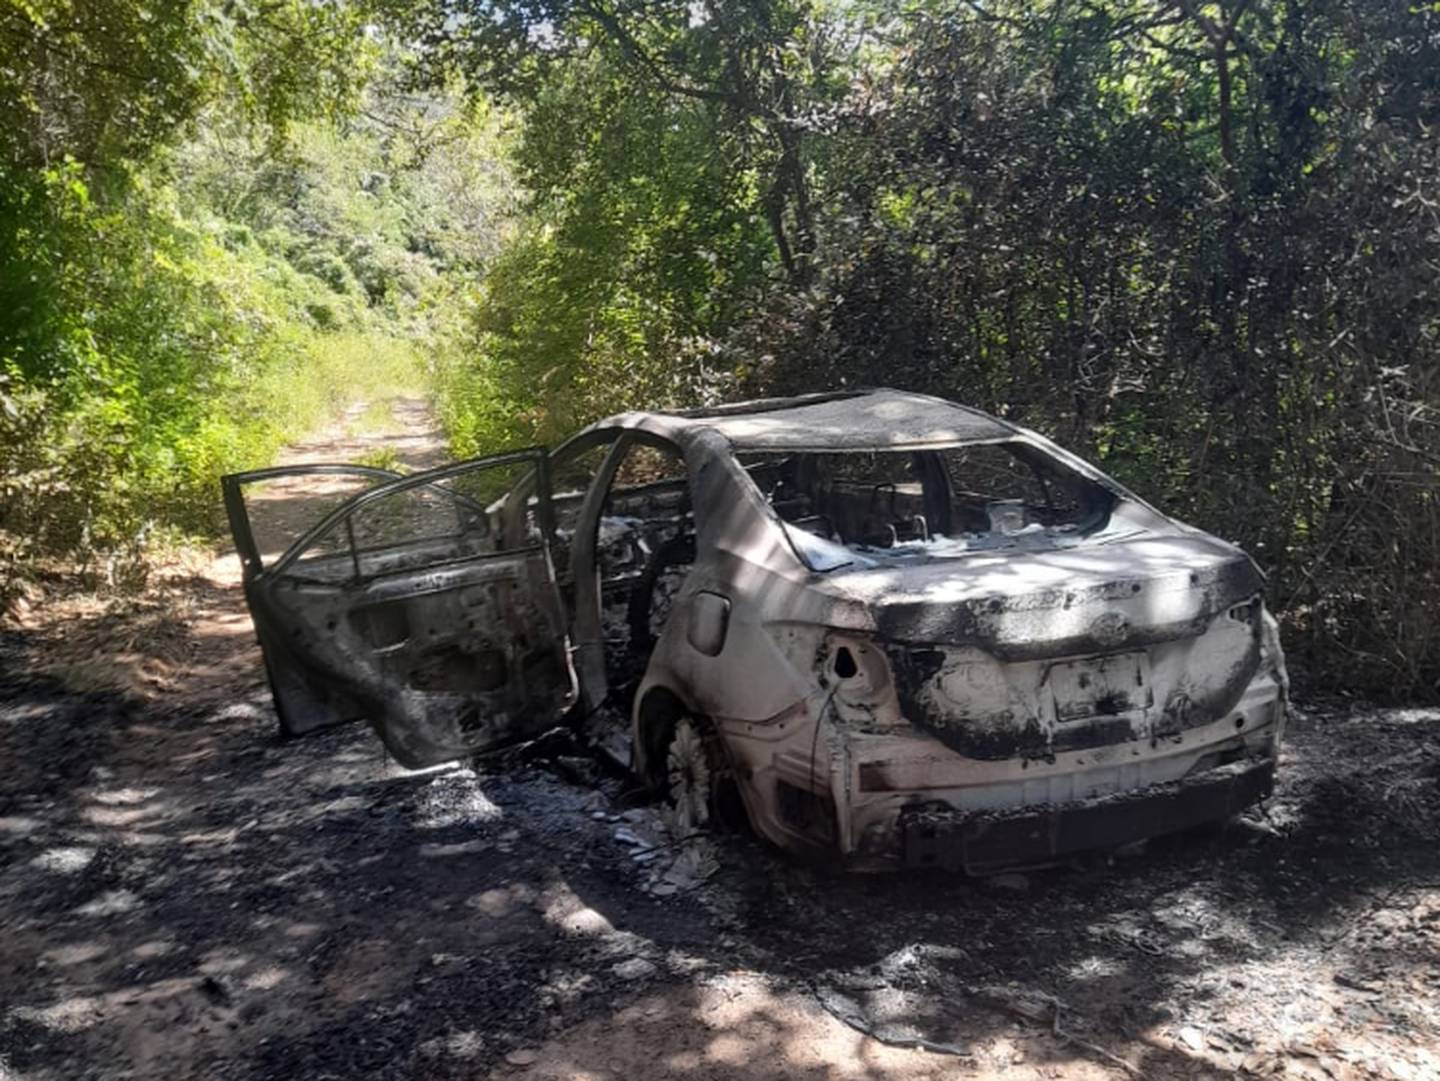 Exámenes de ADN permitieron identificar a Juan carlos Jiménez como el hombre que apareció quemado junto a este Toyota Corolla en Bagaces. Foto: Cortesía OIJ.